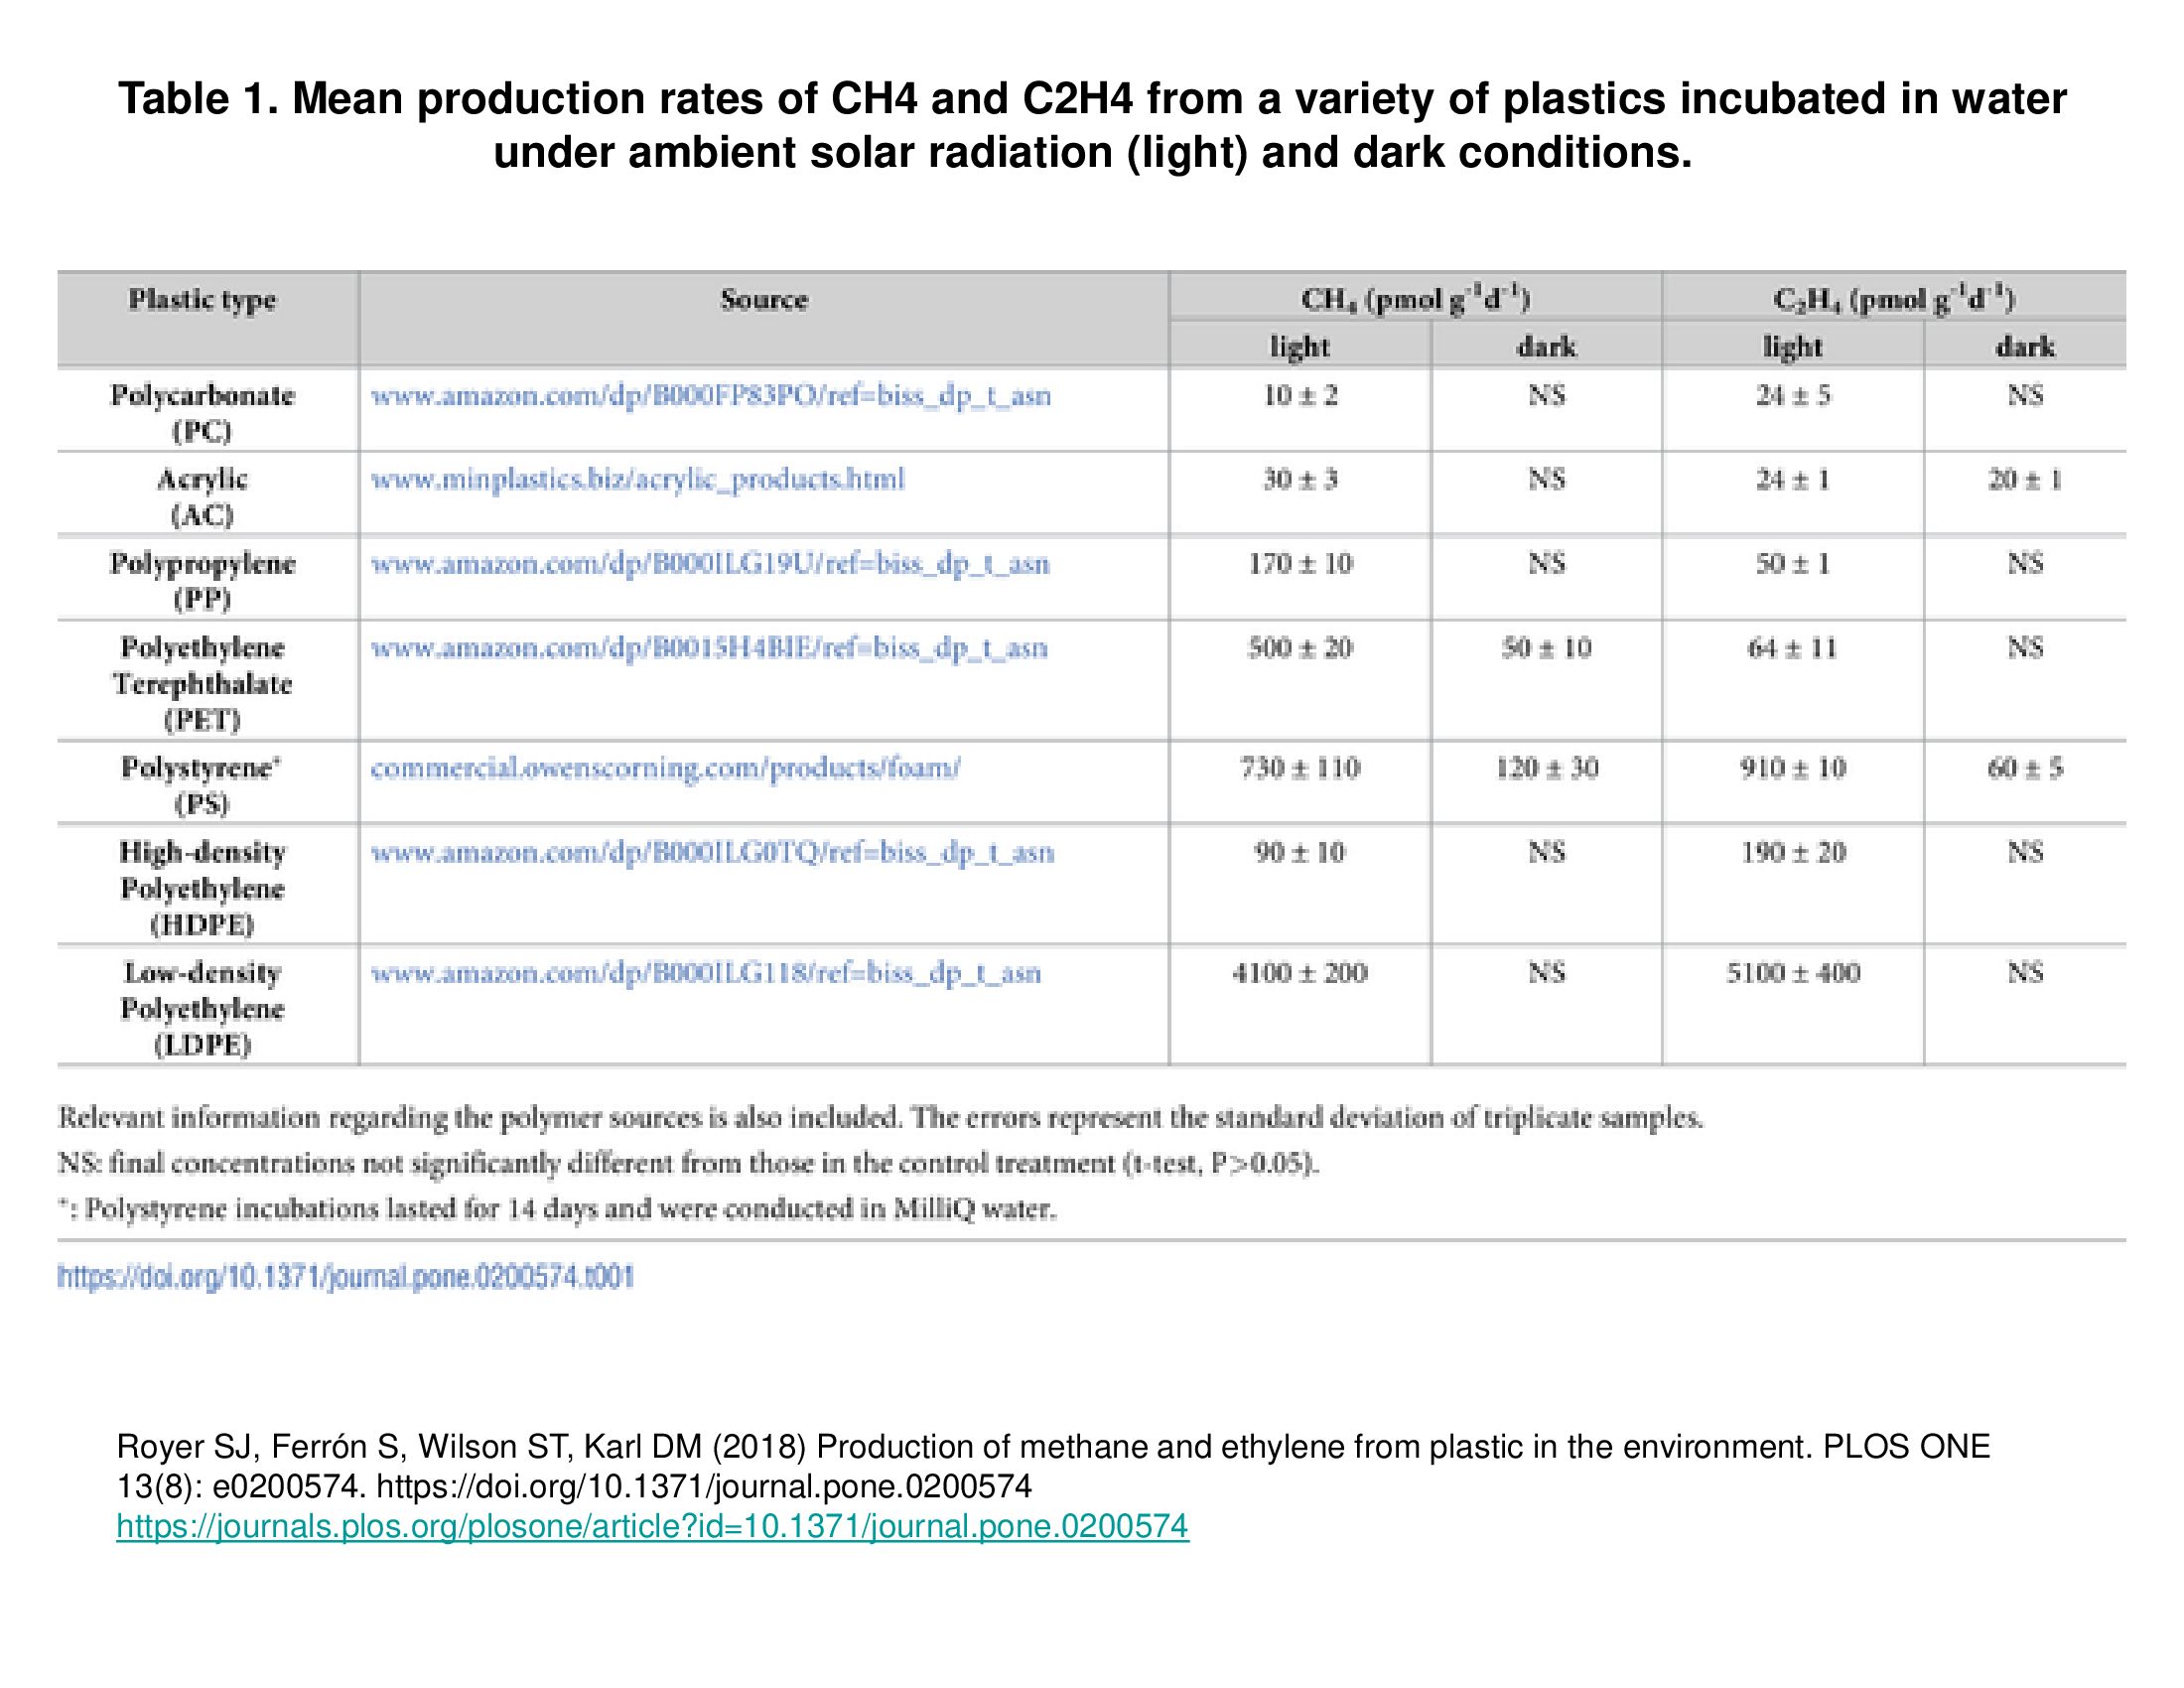 taxas médias de produção de ch4 e c2h4